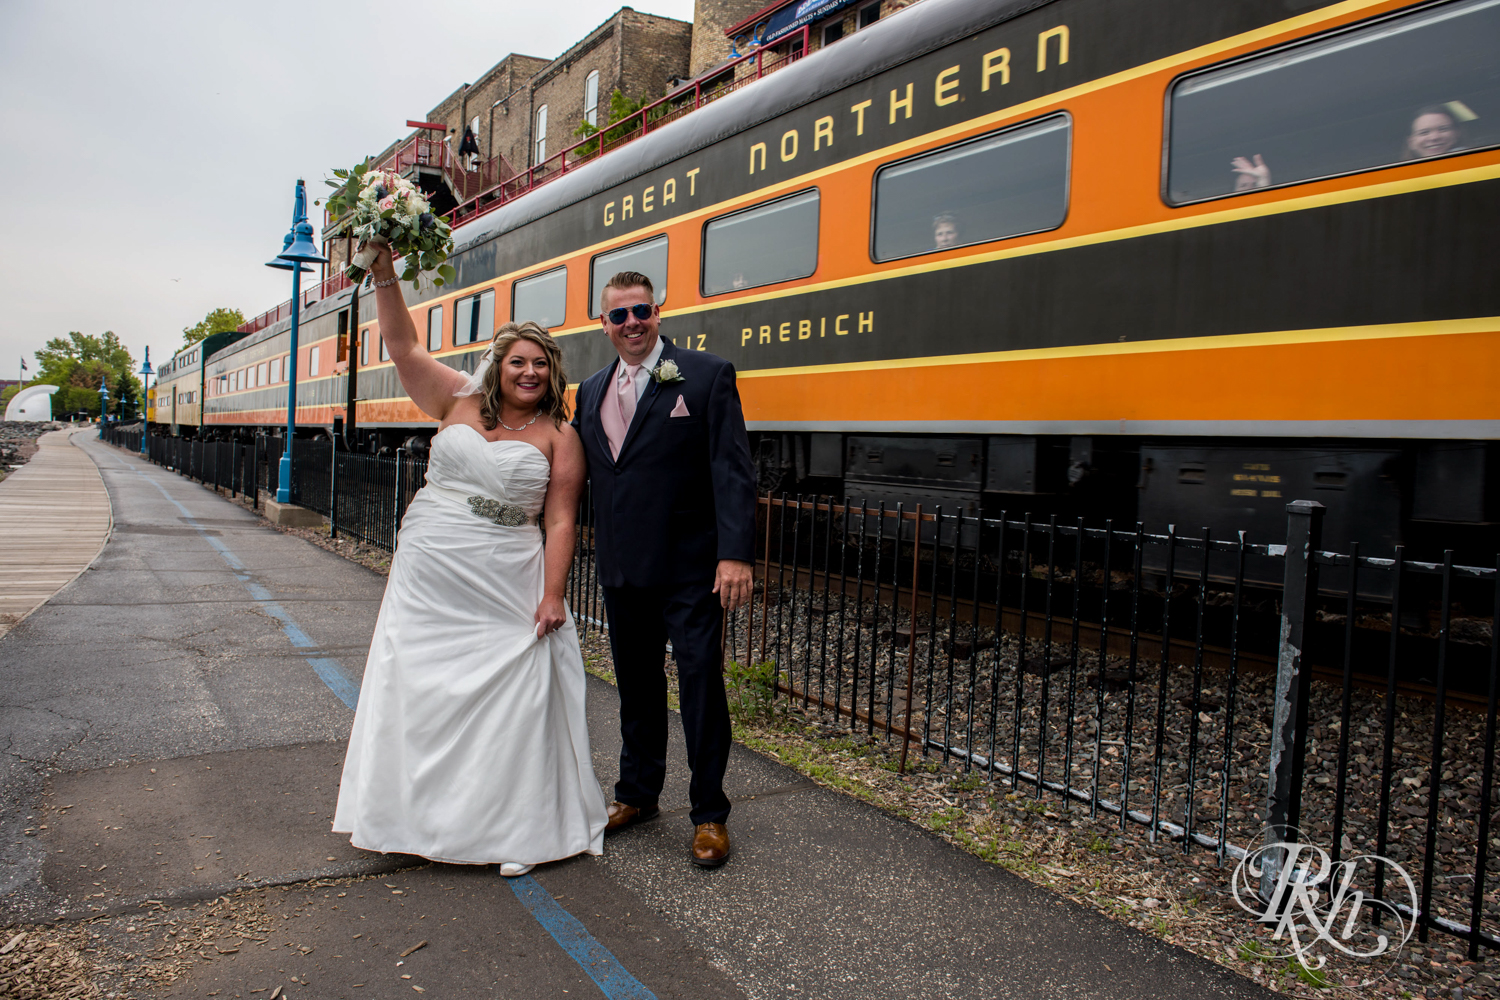 Train behind bride and groom